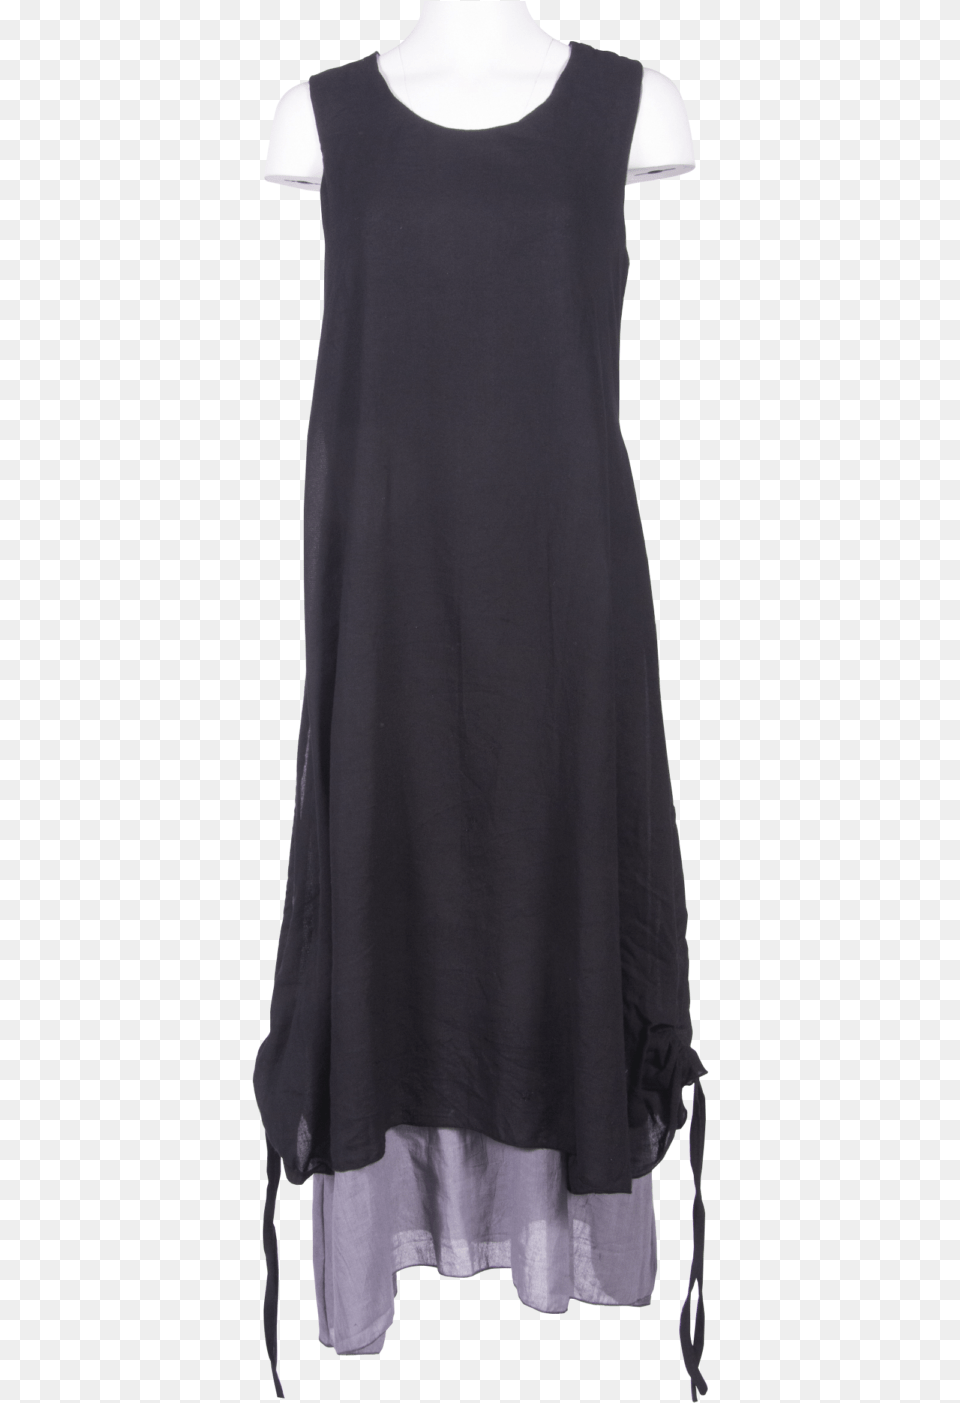 Little Black Dress, Home Decor, Blouse, Clothing, Linen Free Transparent Png